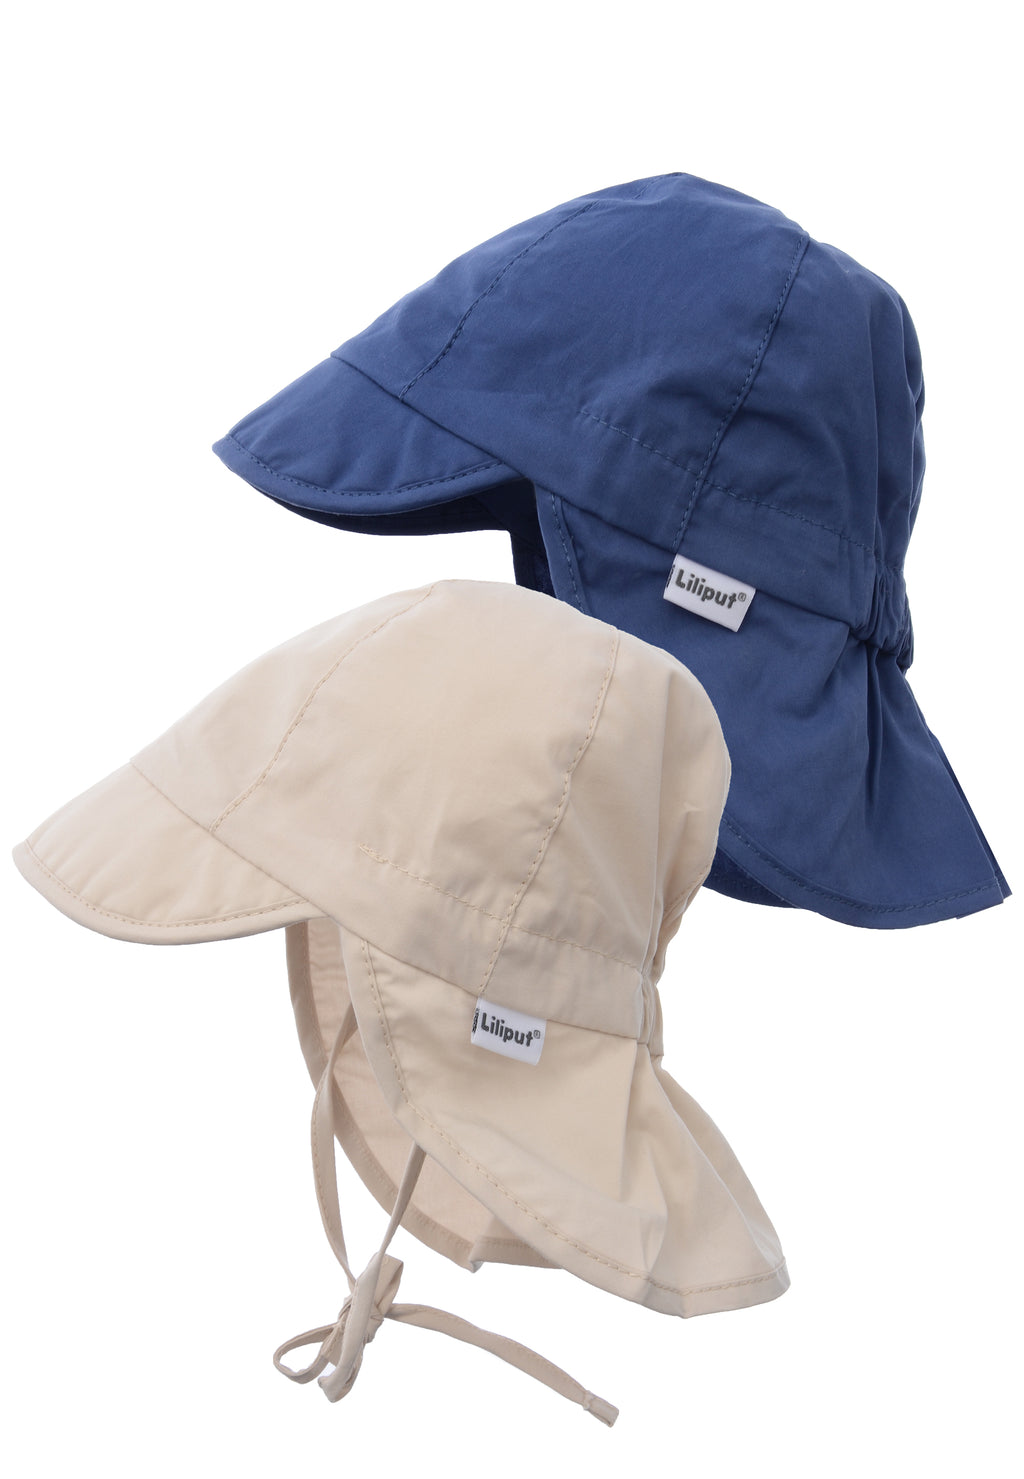 Doppelpack Kinder Schirmmützen für den Sommer mit UV-Lichtschutzfaktor +50 in beige und marine.